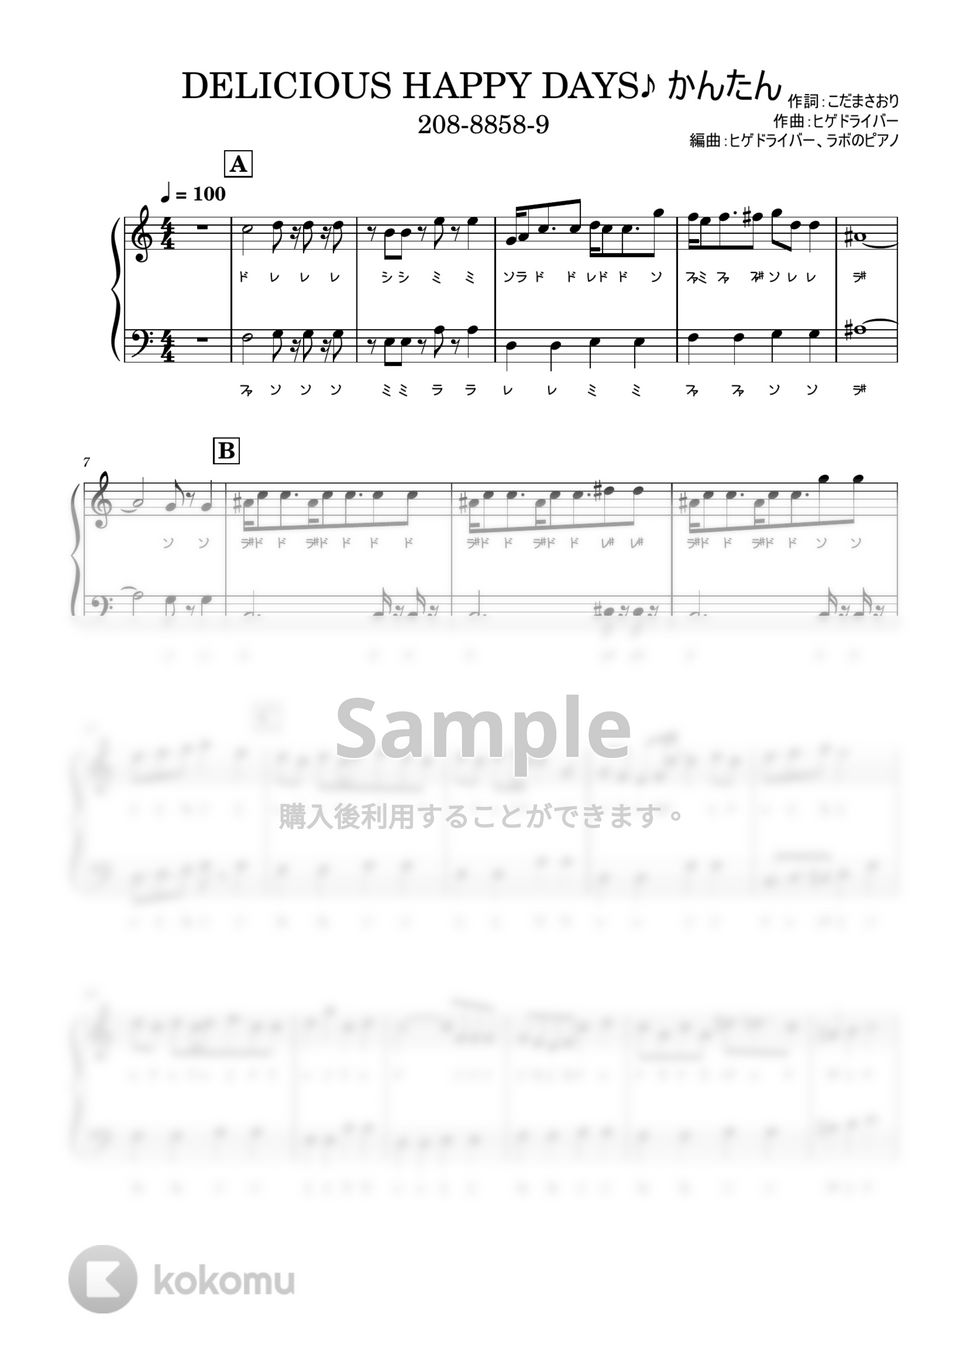 吉武千颯 - DELICIOUS HAPPY DAYS♪ デリシャスパーティ♡プリキュアED ドレミ付 かんたんver. by ラボのピアノ